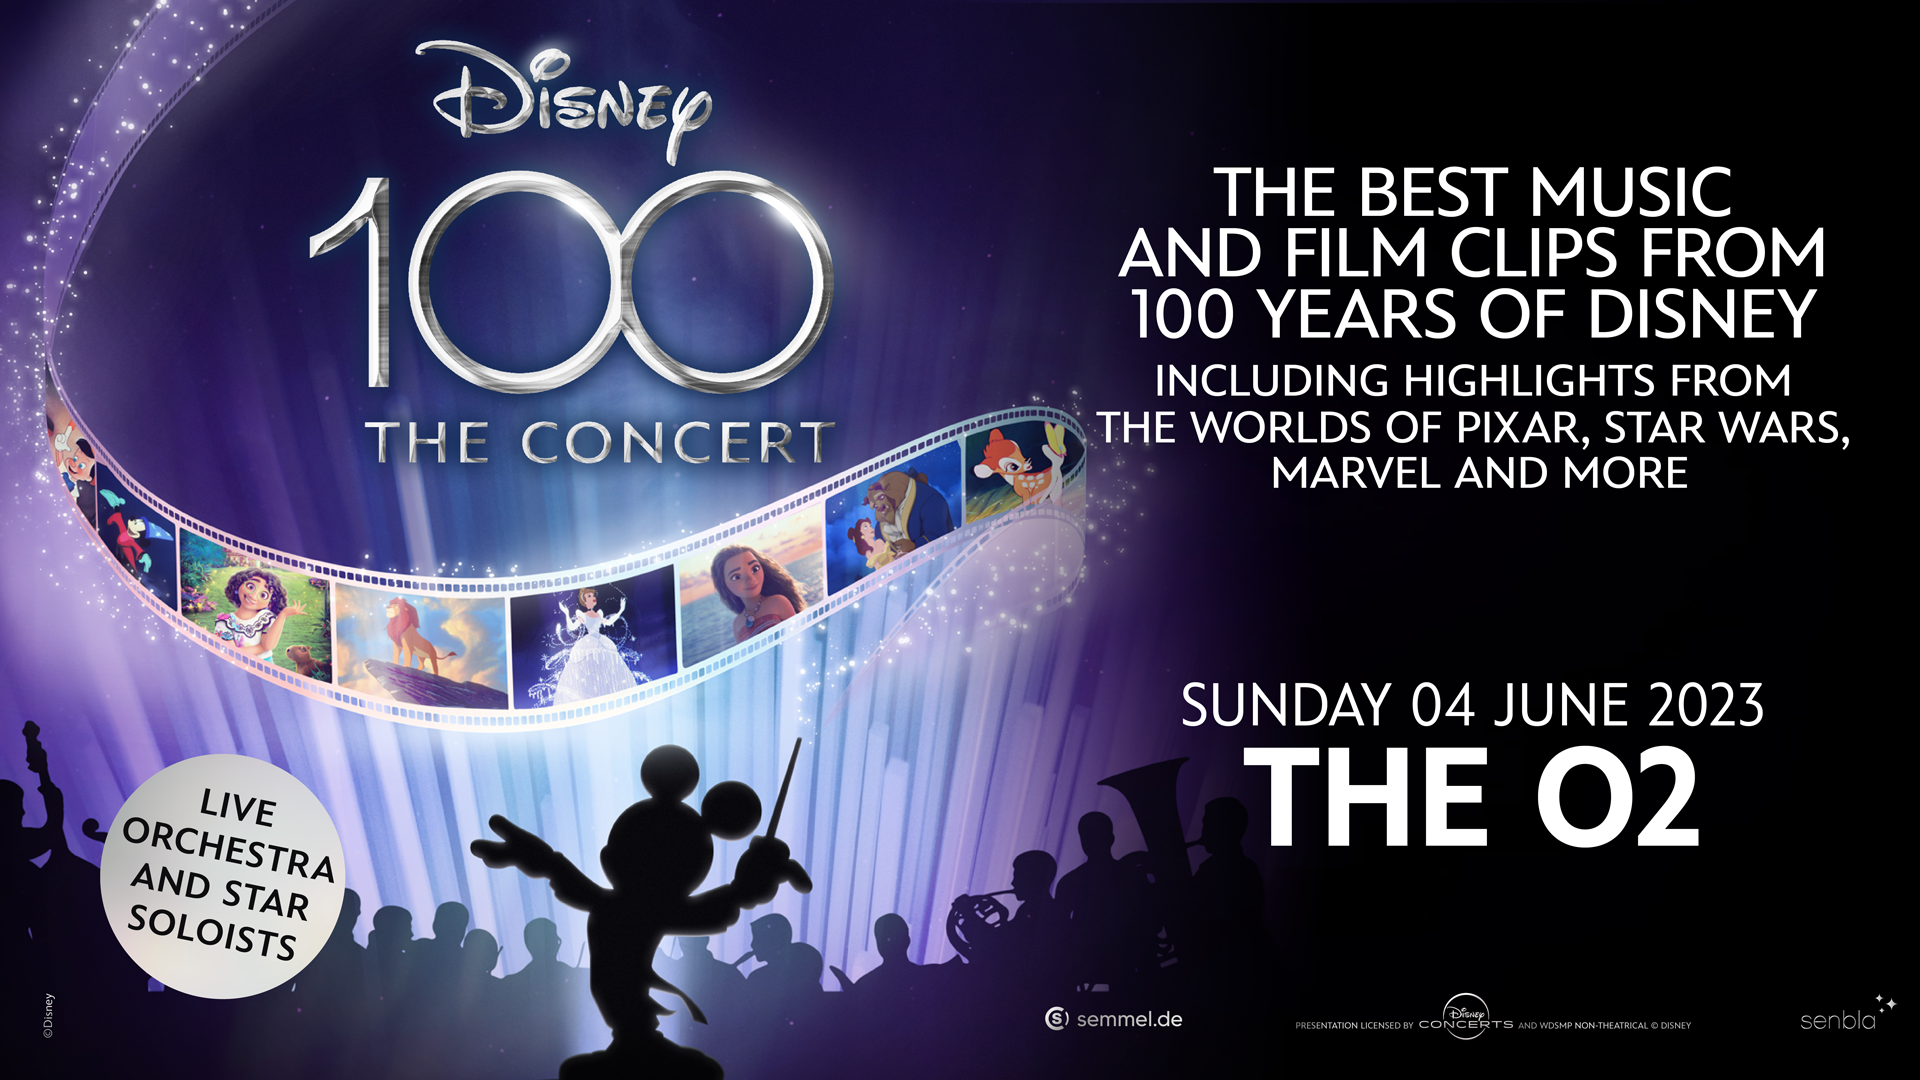 Disney 100: le Concert Evénement